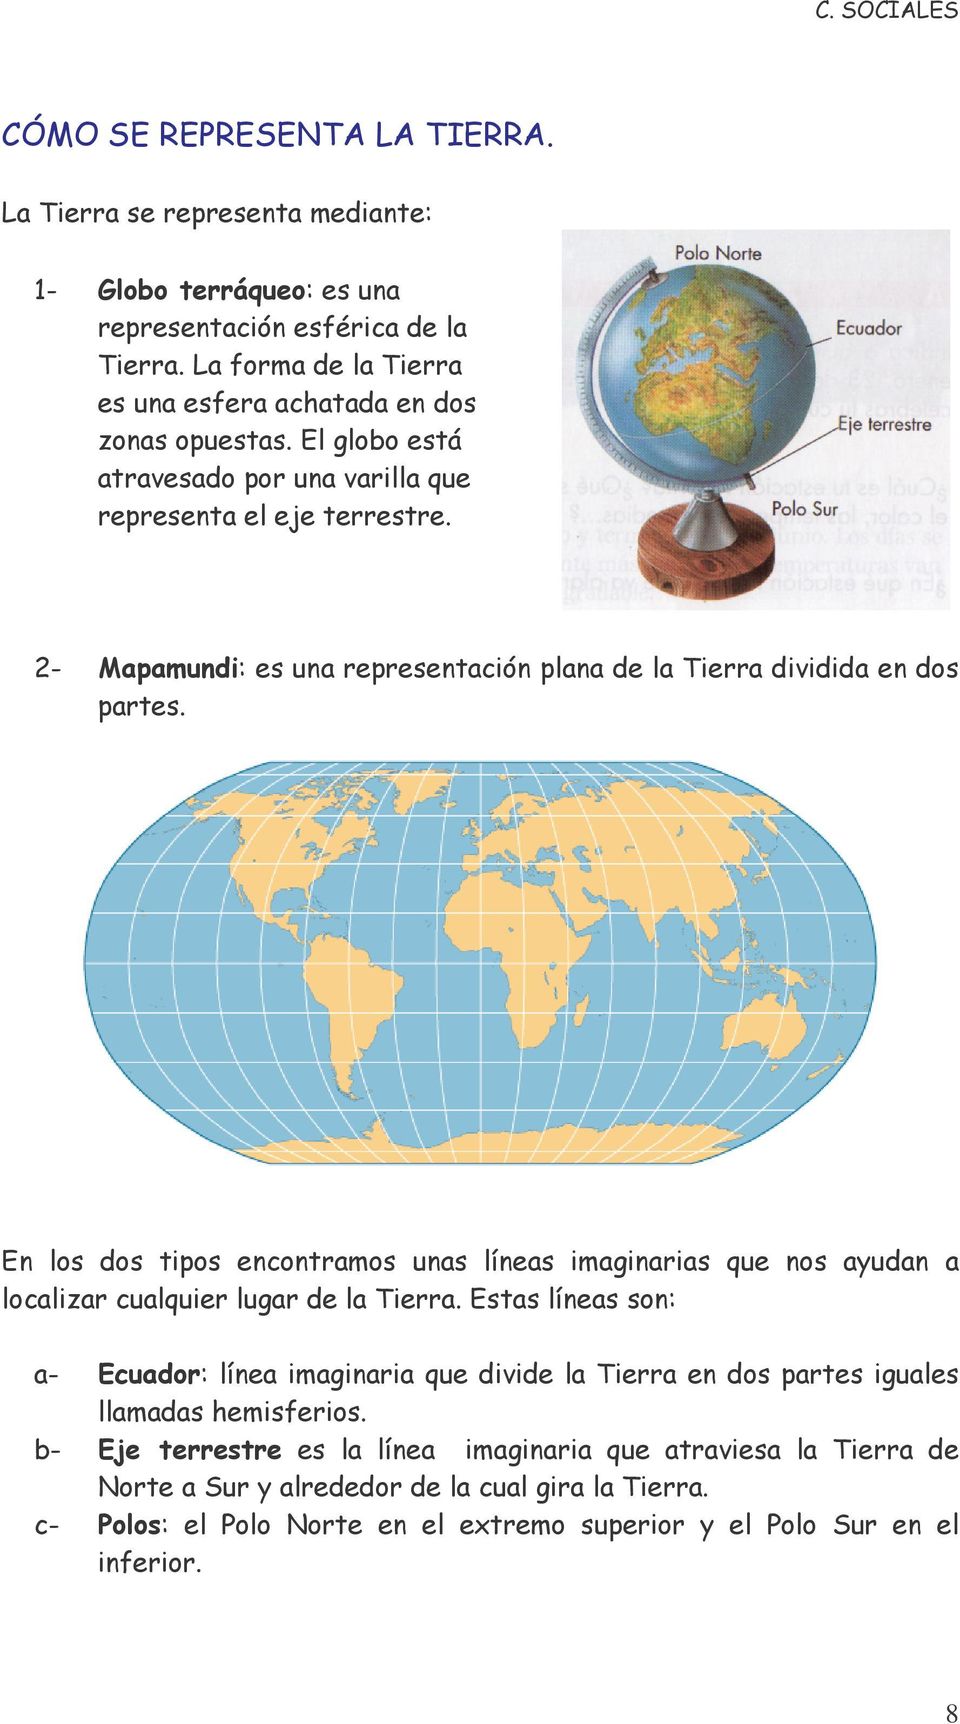 2- Mapamundi: es una representación plana de la Tierra dividida en dos partes. En los dos tipos encontramos unas líneas imaginarias que nos ayudan a localizar cualquier lugar de la Tierra.